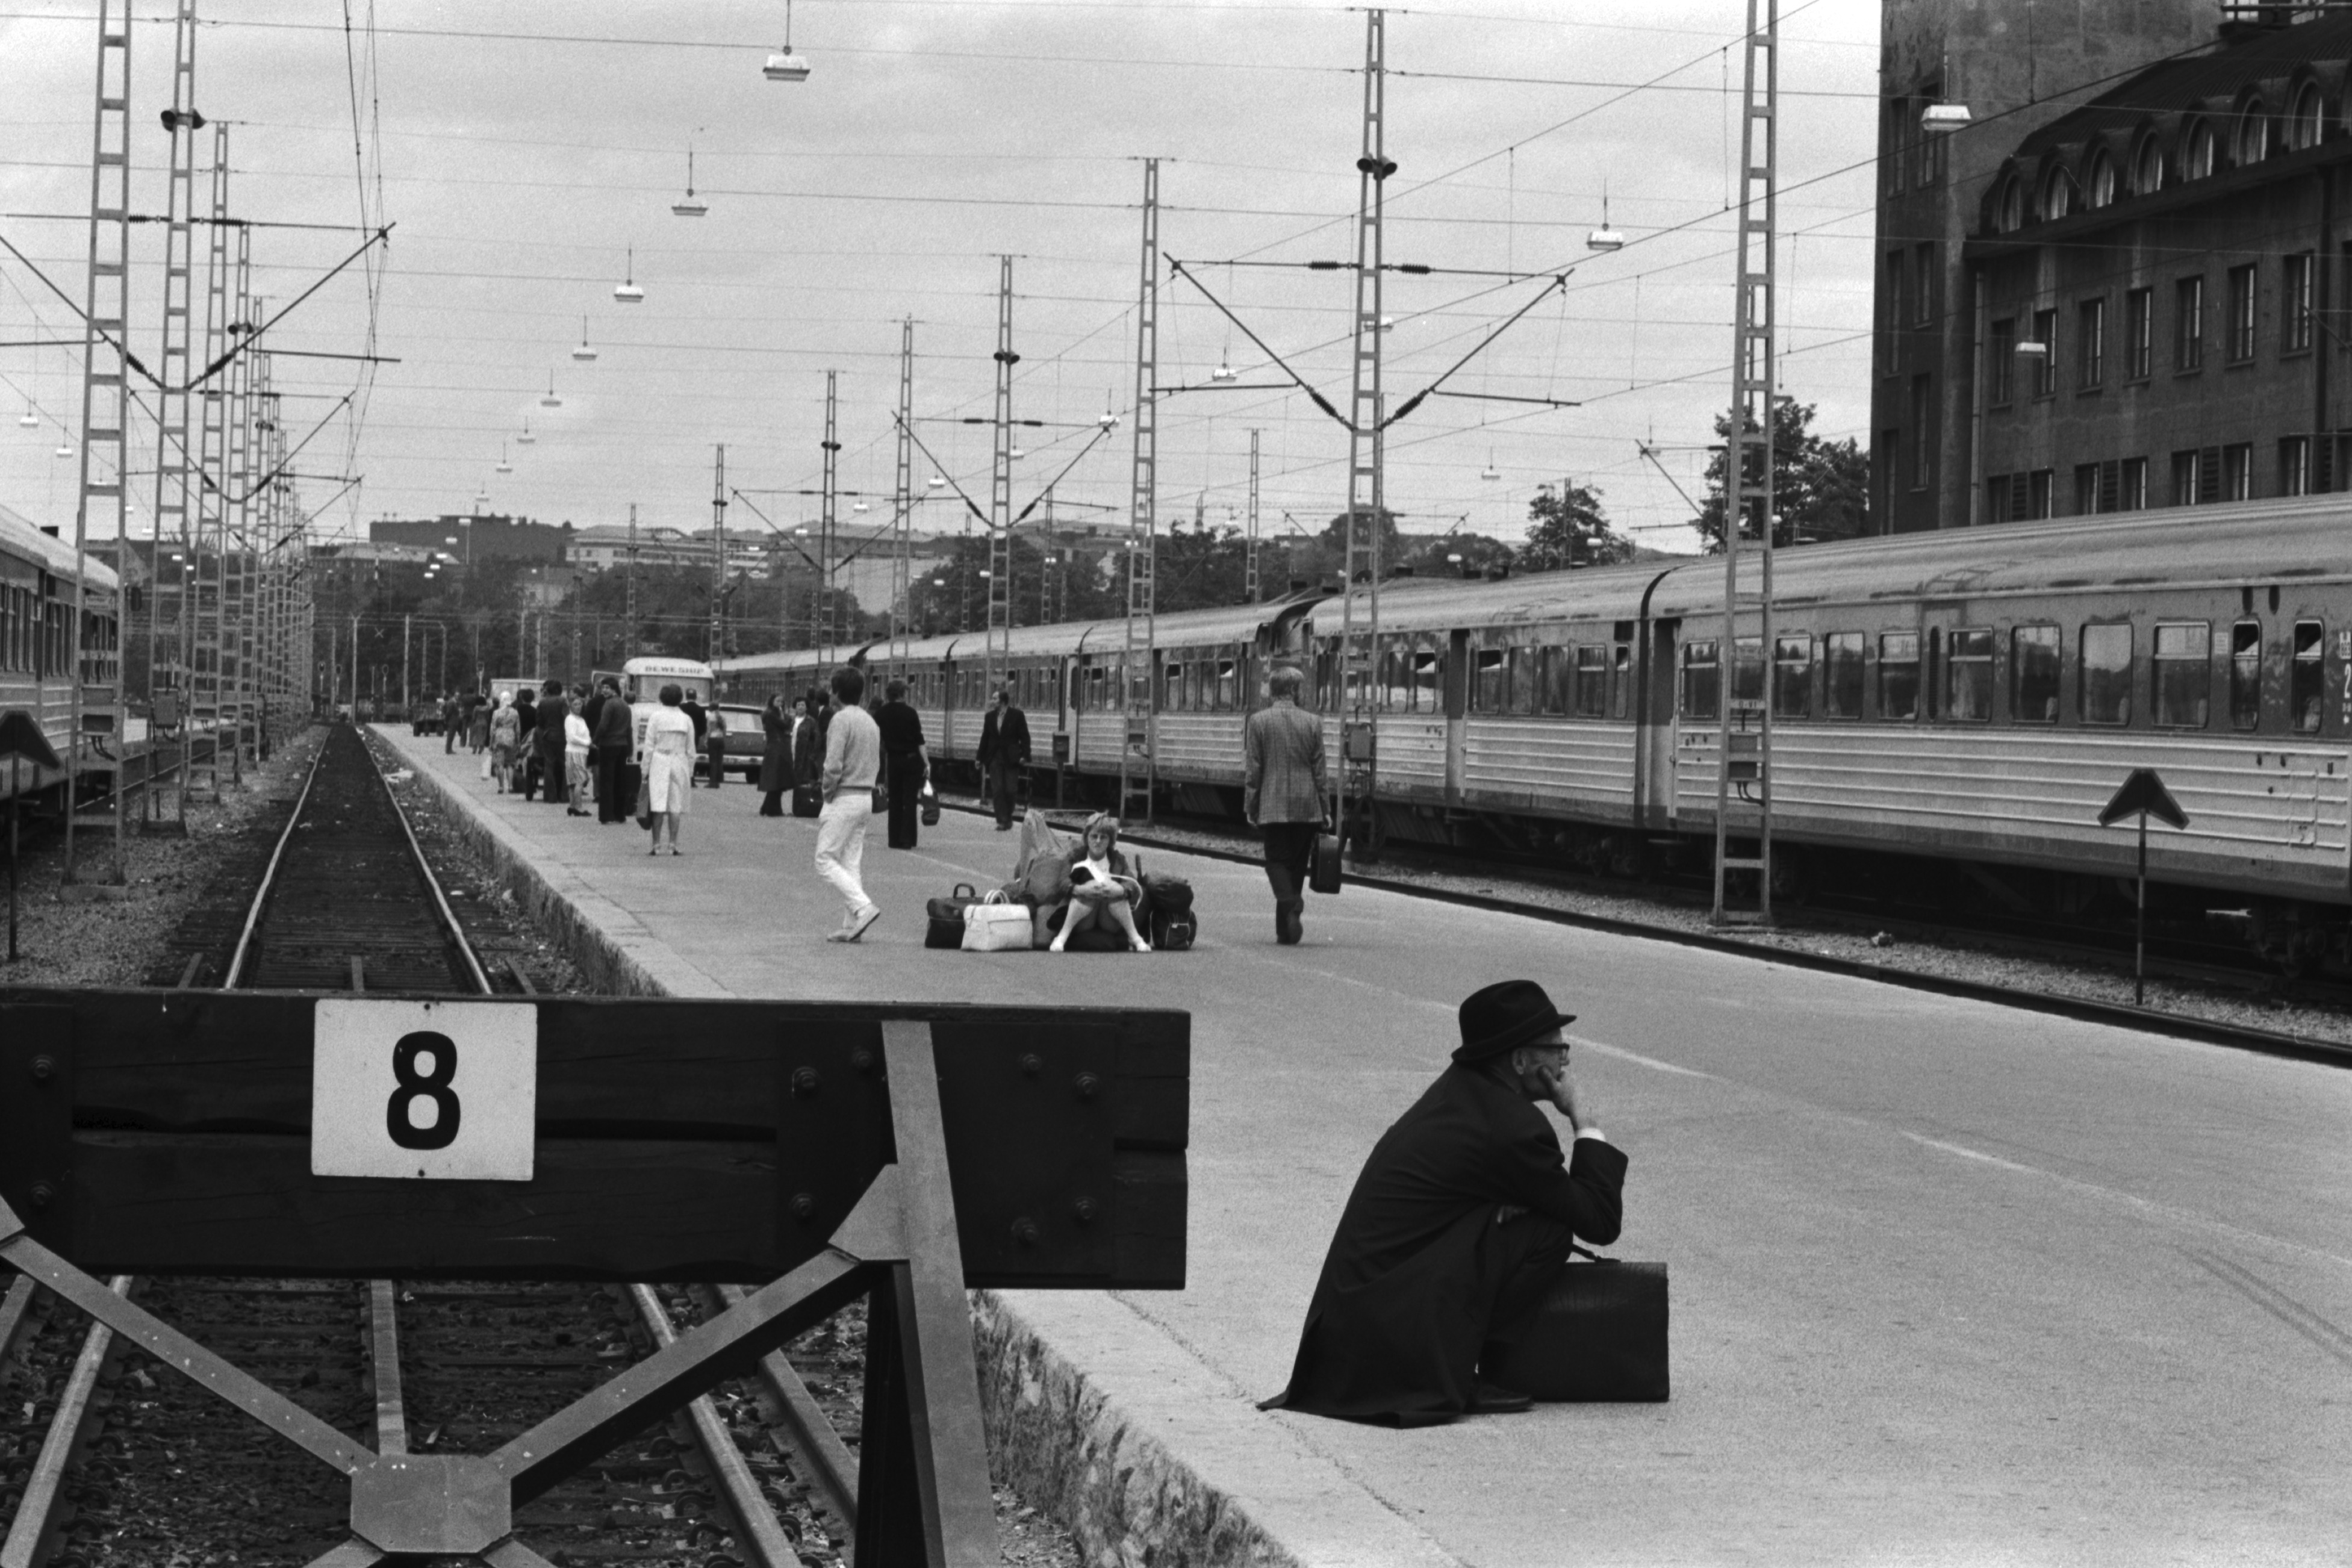 Helsingin rautatieasema. Näkymä raide 8:n päästä pohjoiseen, junien tulosuuntaan. Asemalaiturilla junaa odottavia ihmisiä. Edessä kyykyssä oleva mies salkkuineen, keskellä nuori nainen istumassa suuren matkatavarakasan päällä. Taaempana dieselmoottorijuna.